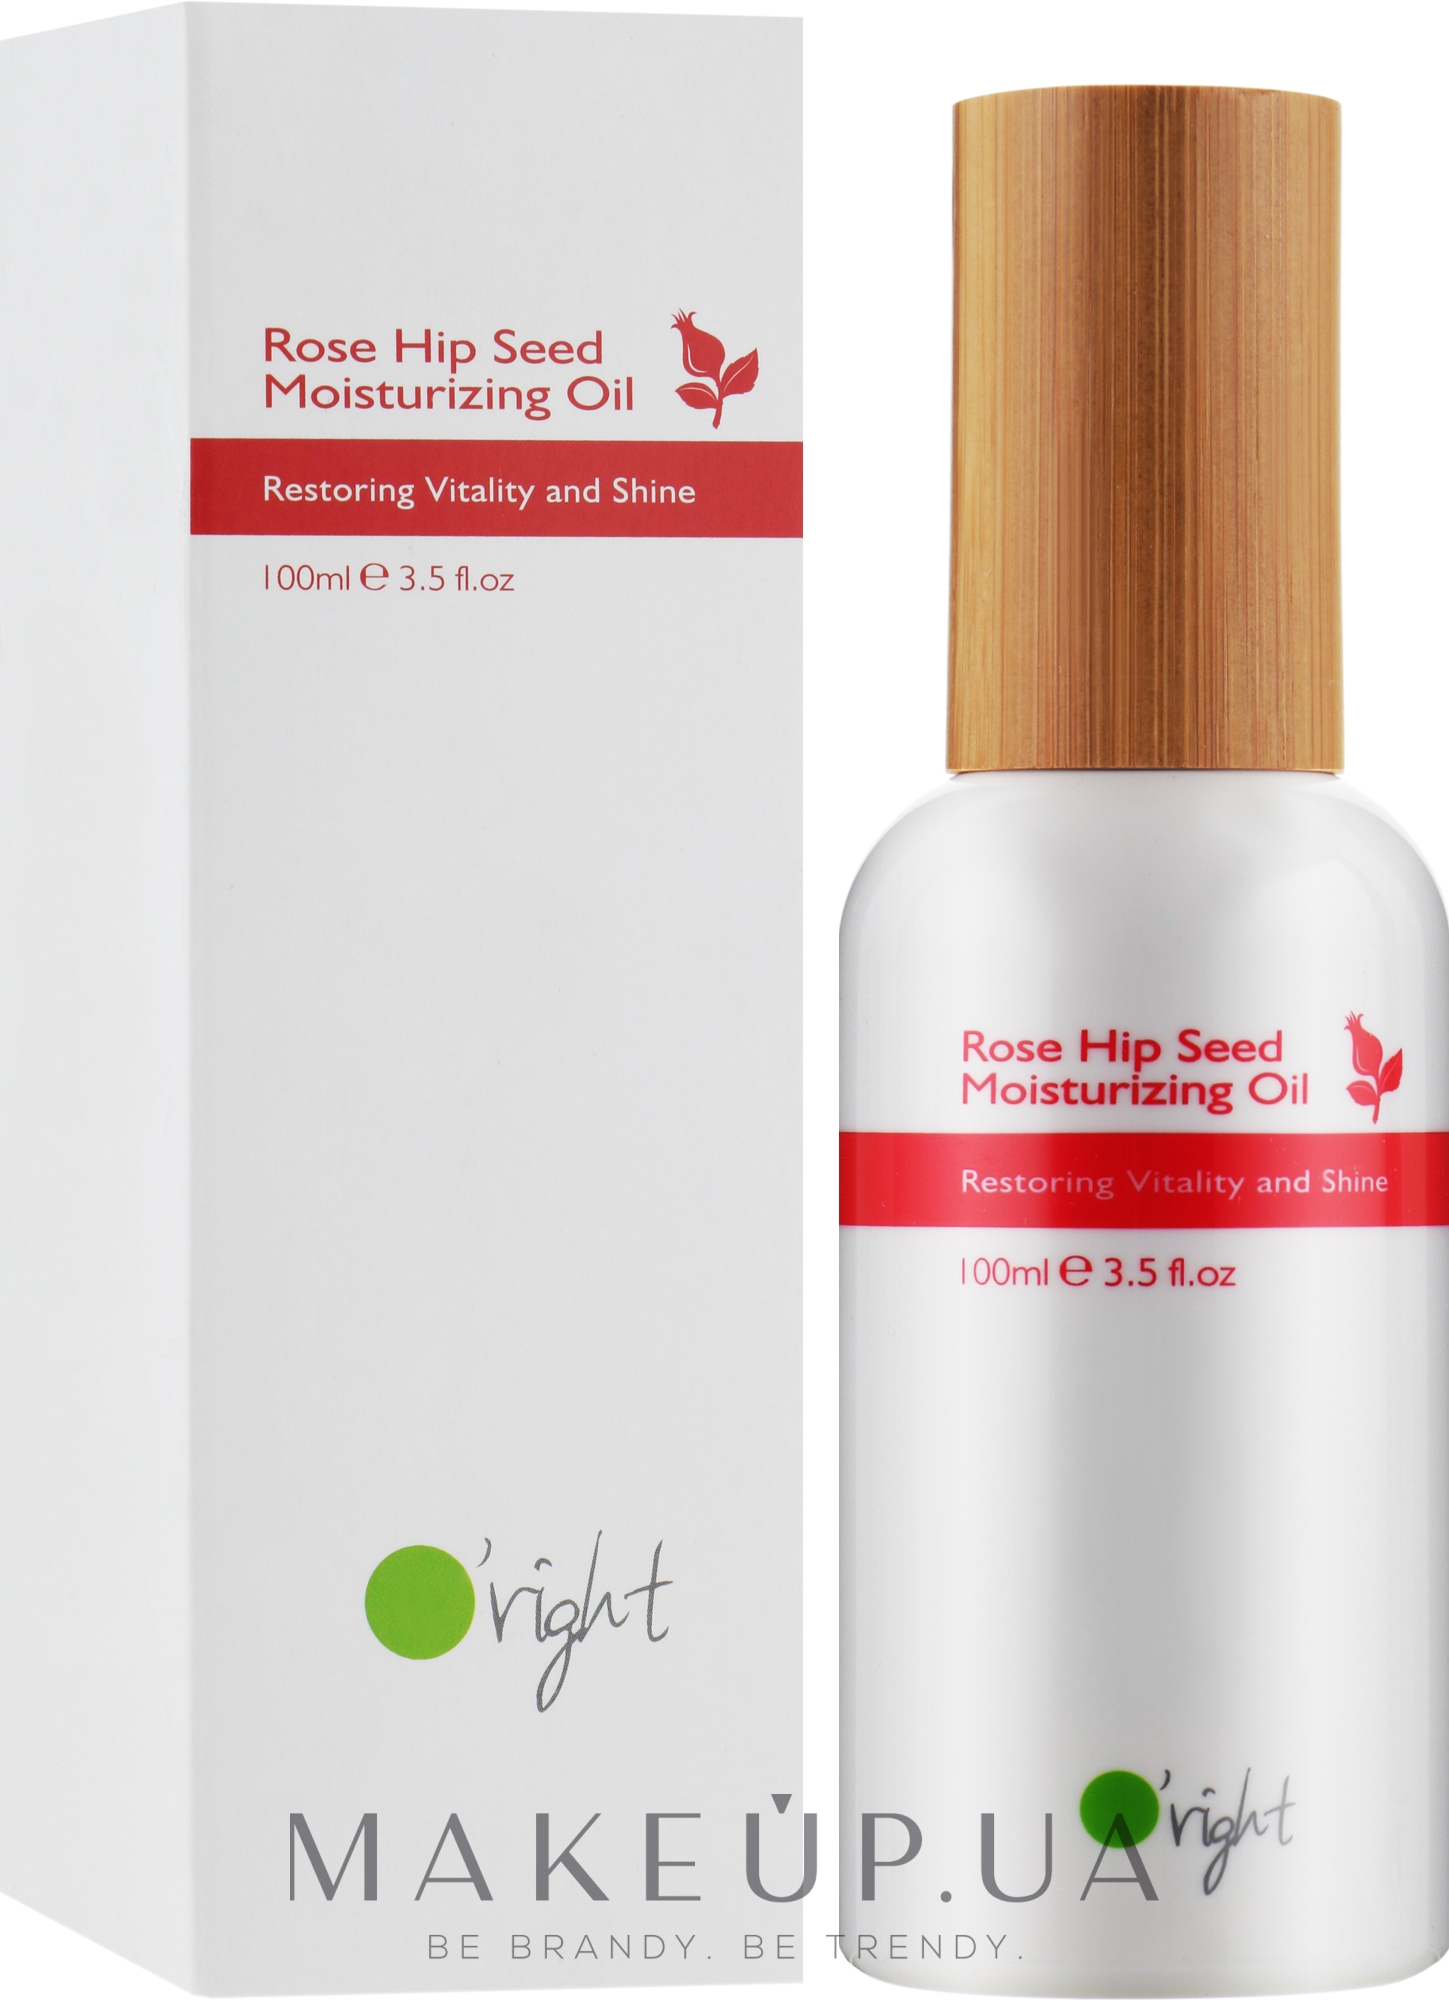 Органическое увлажняющее масло для волос из семян шиповника - O'right Rose Hip Seed Moisturizing Oil — фото 100ml